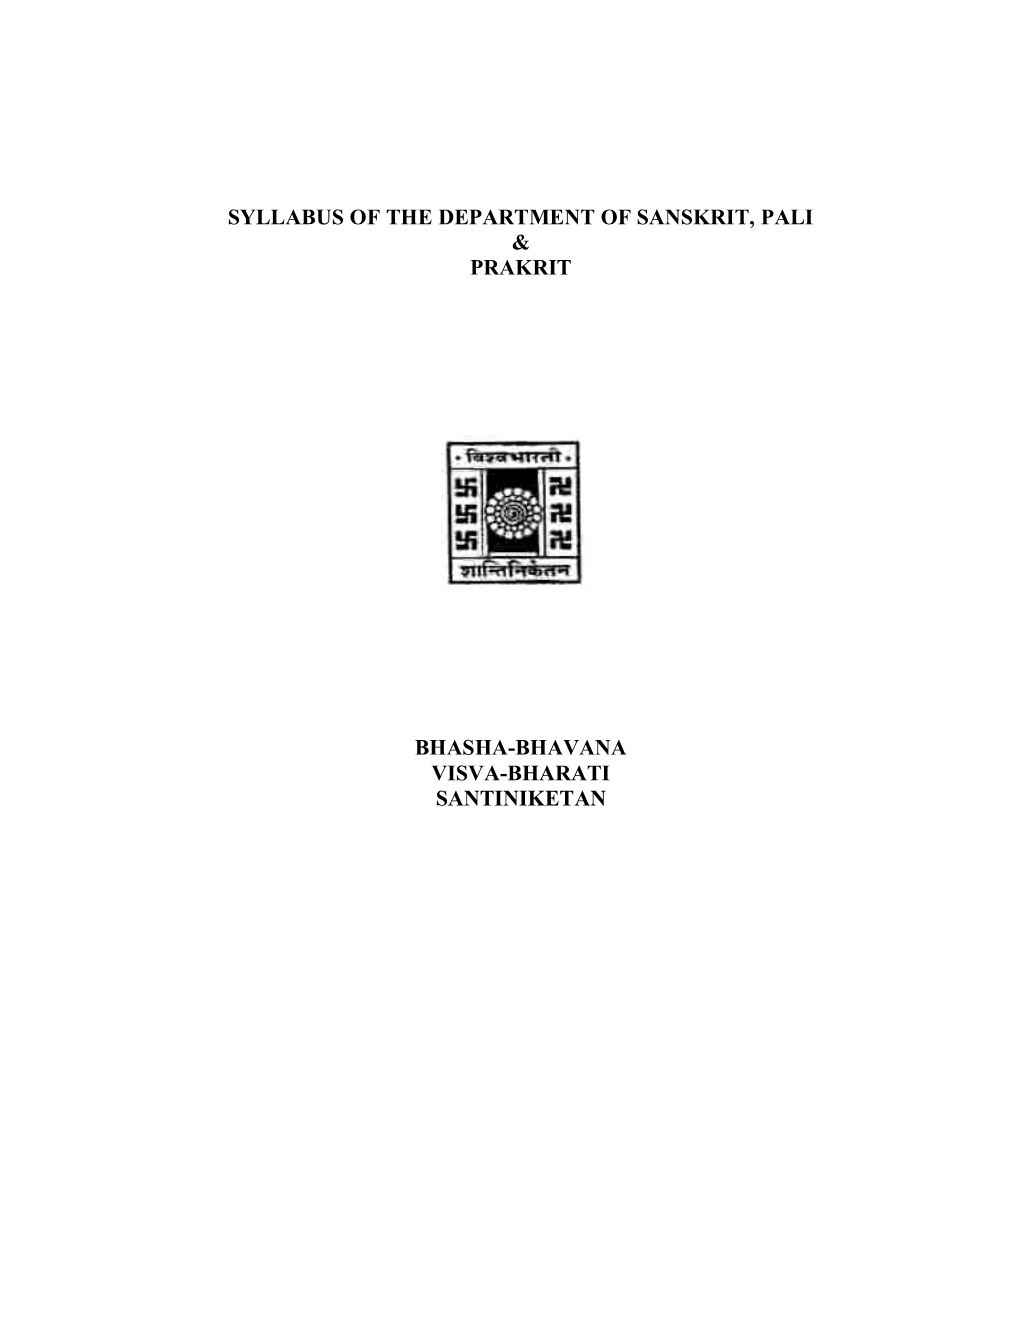 Syllabus of the Department of Sanskrit, Pali & Prakrit Bhasha-Bhavana Visva